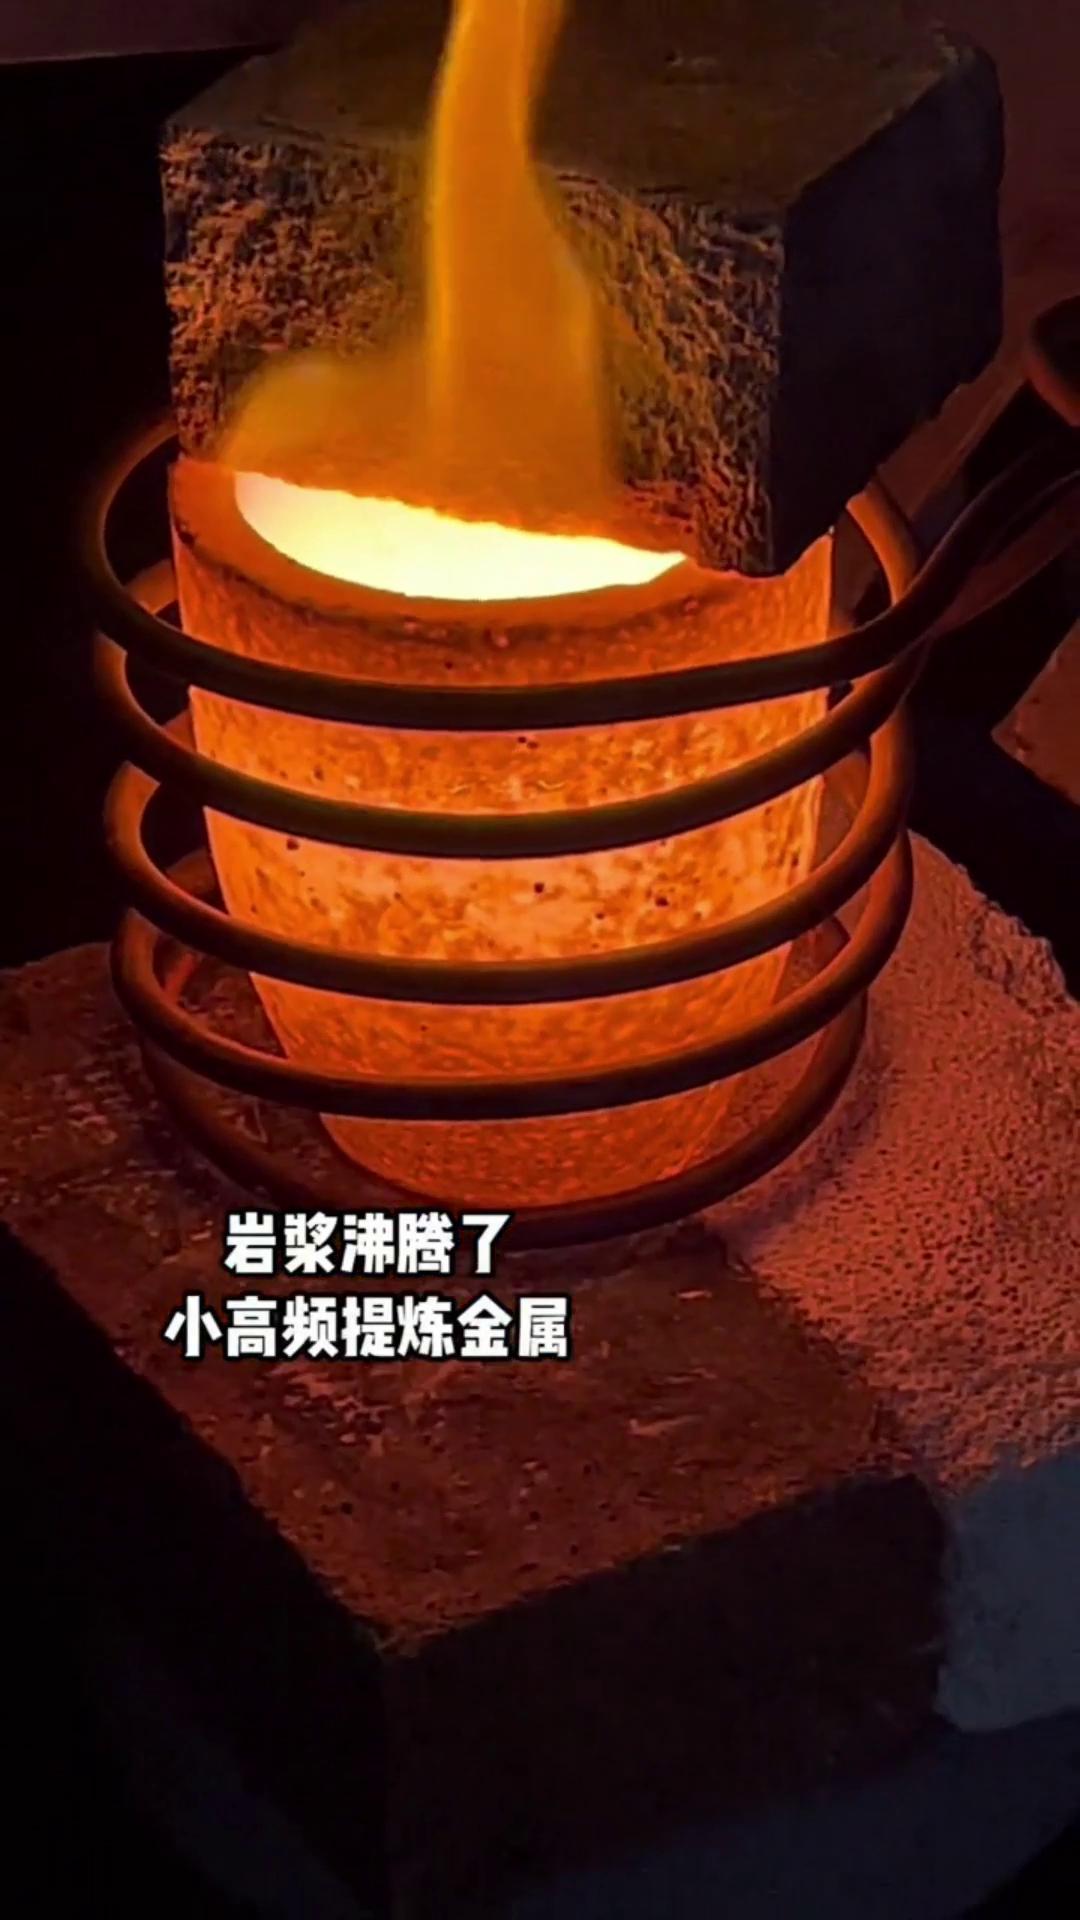 小型金属熔炼炉 中高频熔炼设备 温度可达2200度 适合金银铜铁铝合金熔炼